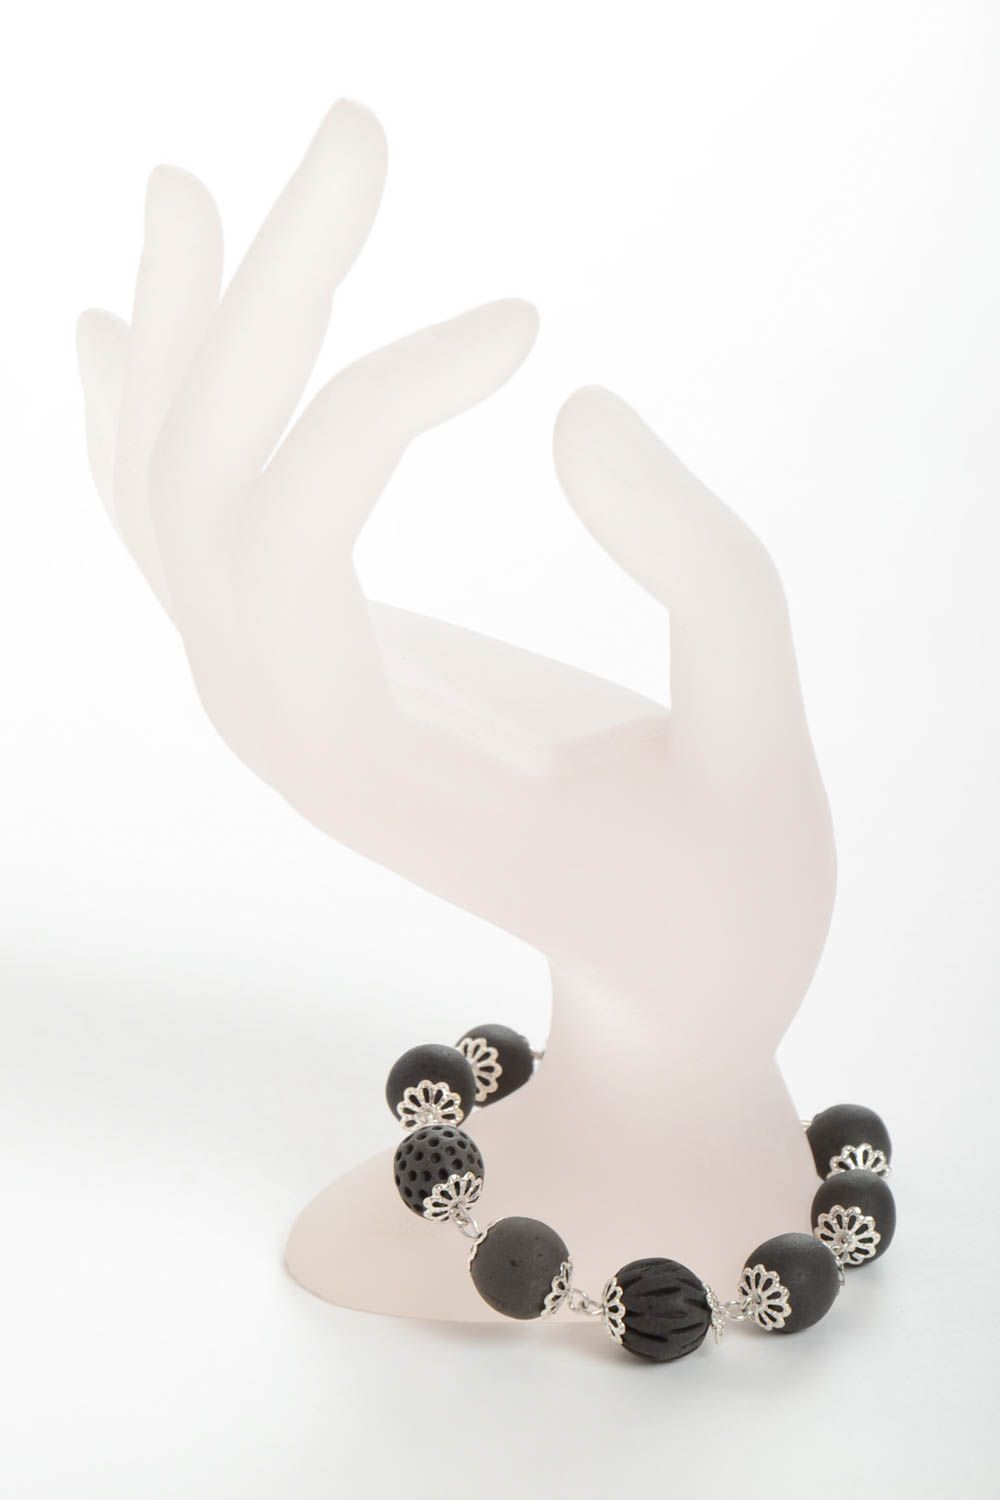 Элегантный браслет из глины ручной работы из бусин в эко стиле для модниц фото 3